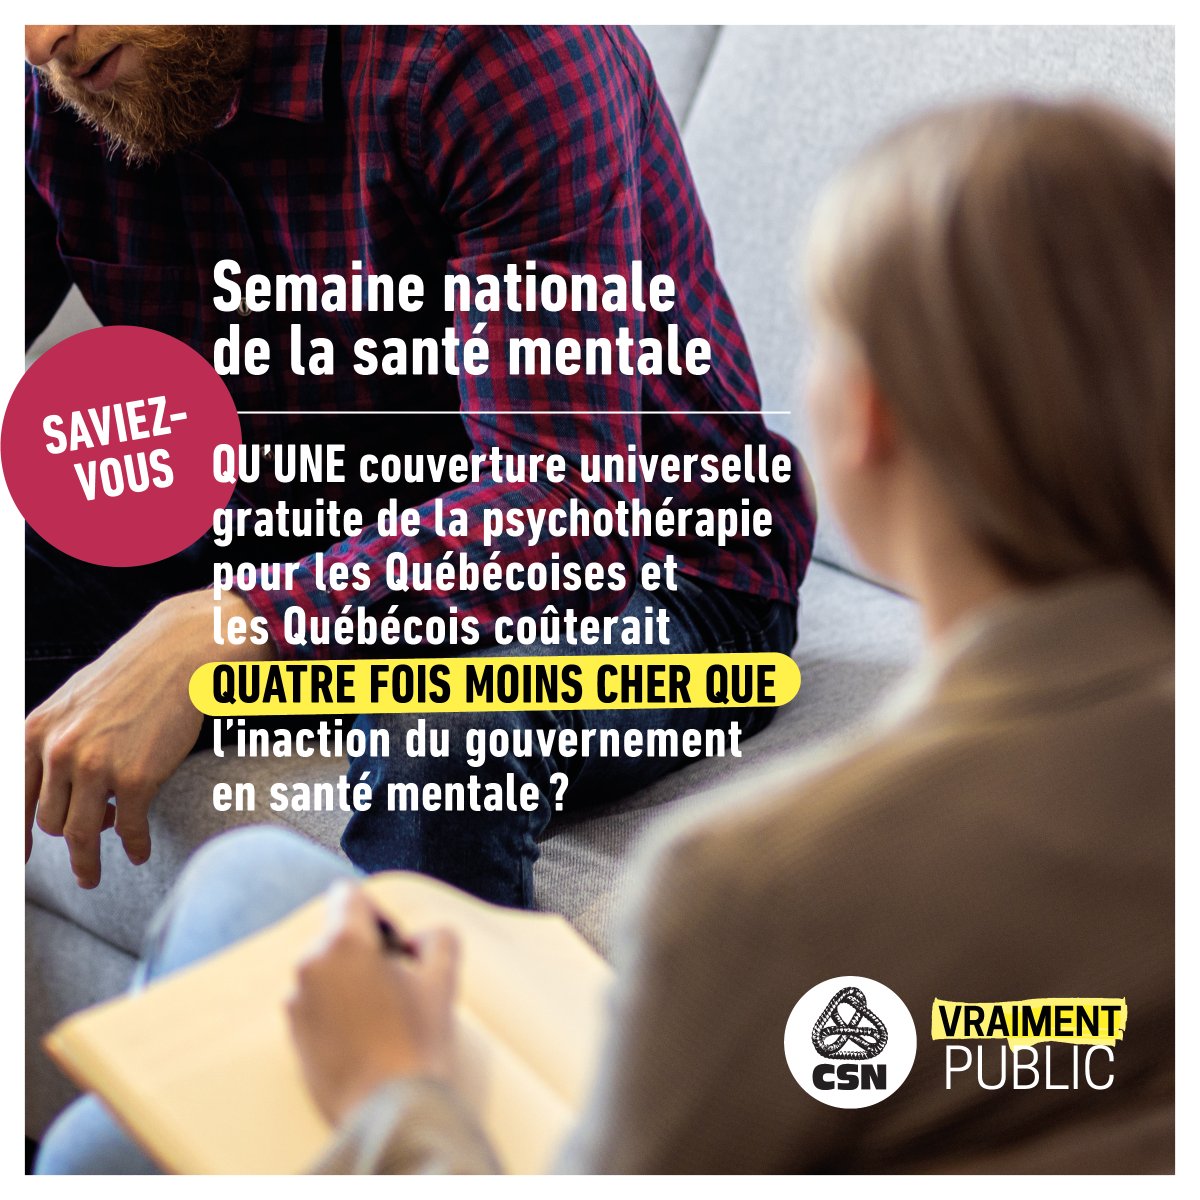 En cette Semaine nationale de la santé mentale, rappelons qu'au Québec, ce dont nous avons besoin, c'est d'un réseau #Vraimentpublic. Pour plus d'info sur notre campagne: csn.qc.ca/vraiment-public #polqc @cdube_sante